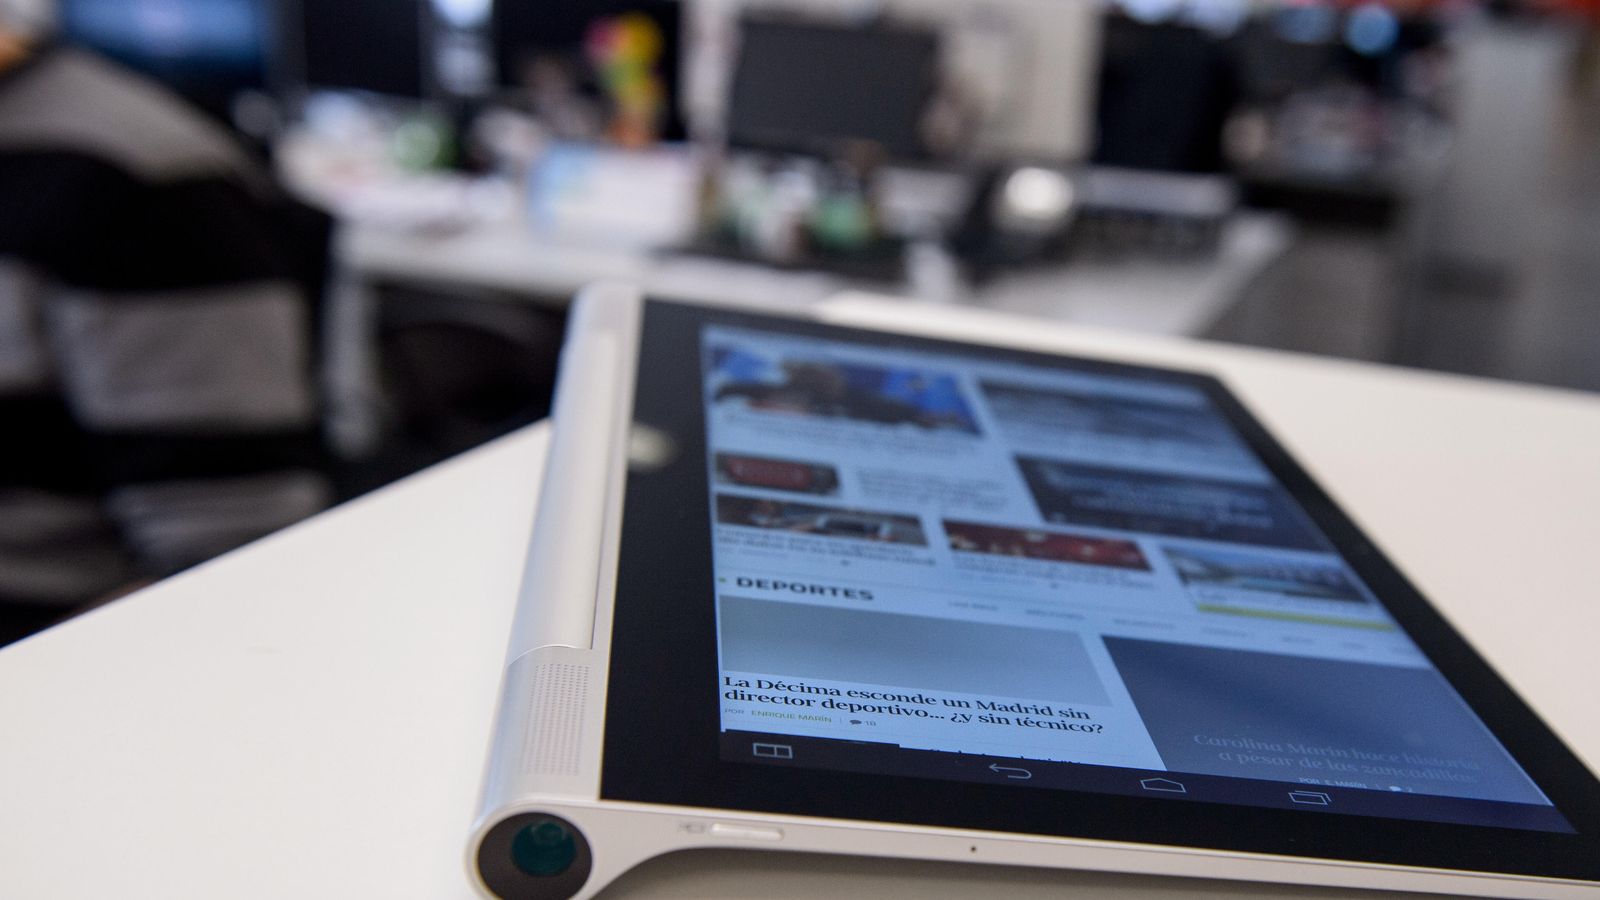 iPad: Se retrasa la producción de una tablet más grande para 2015, CHEKA